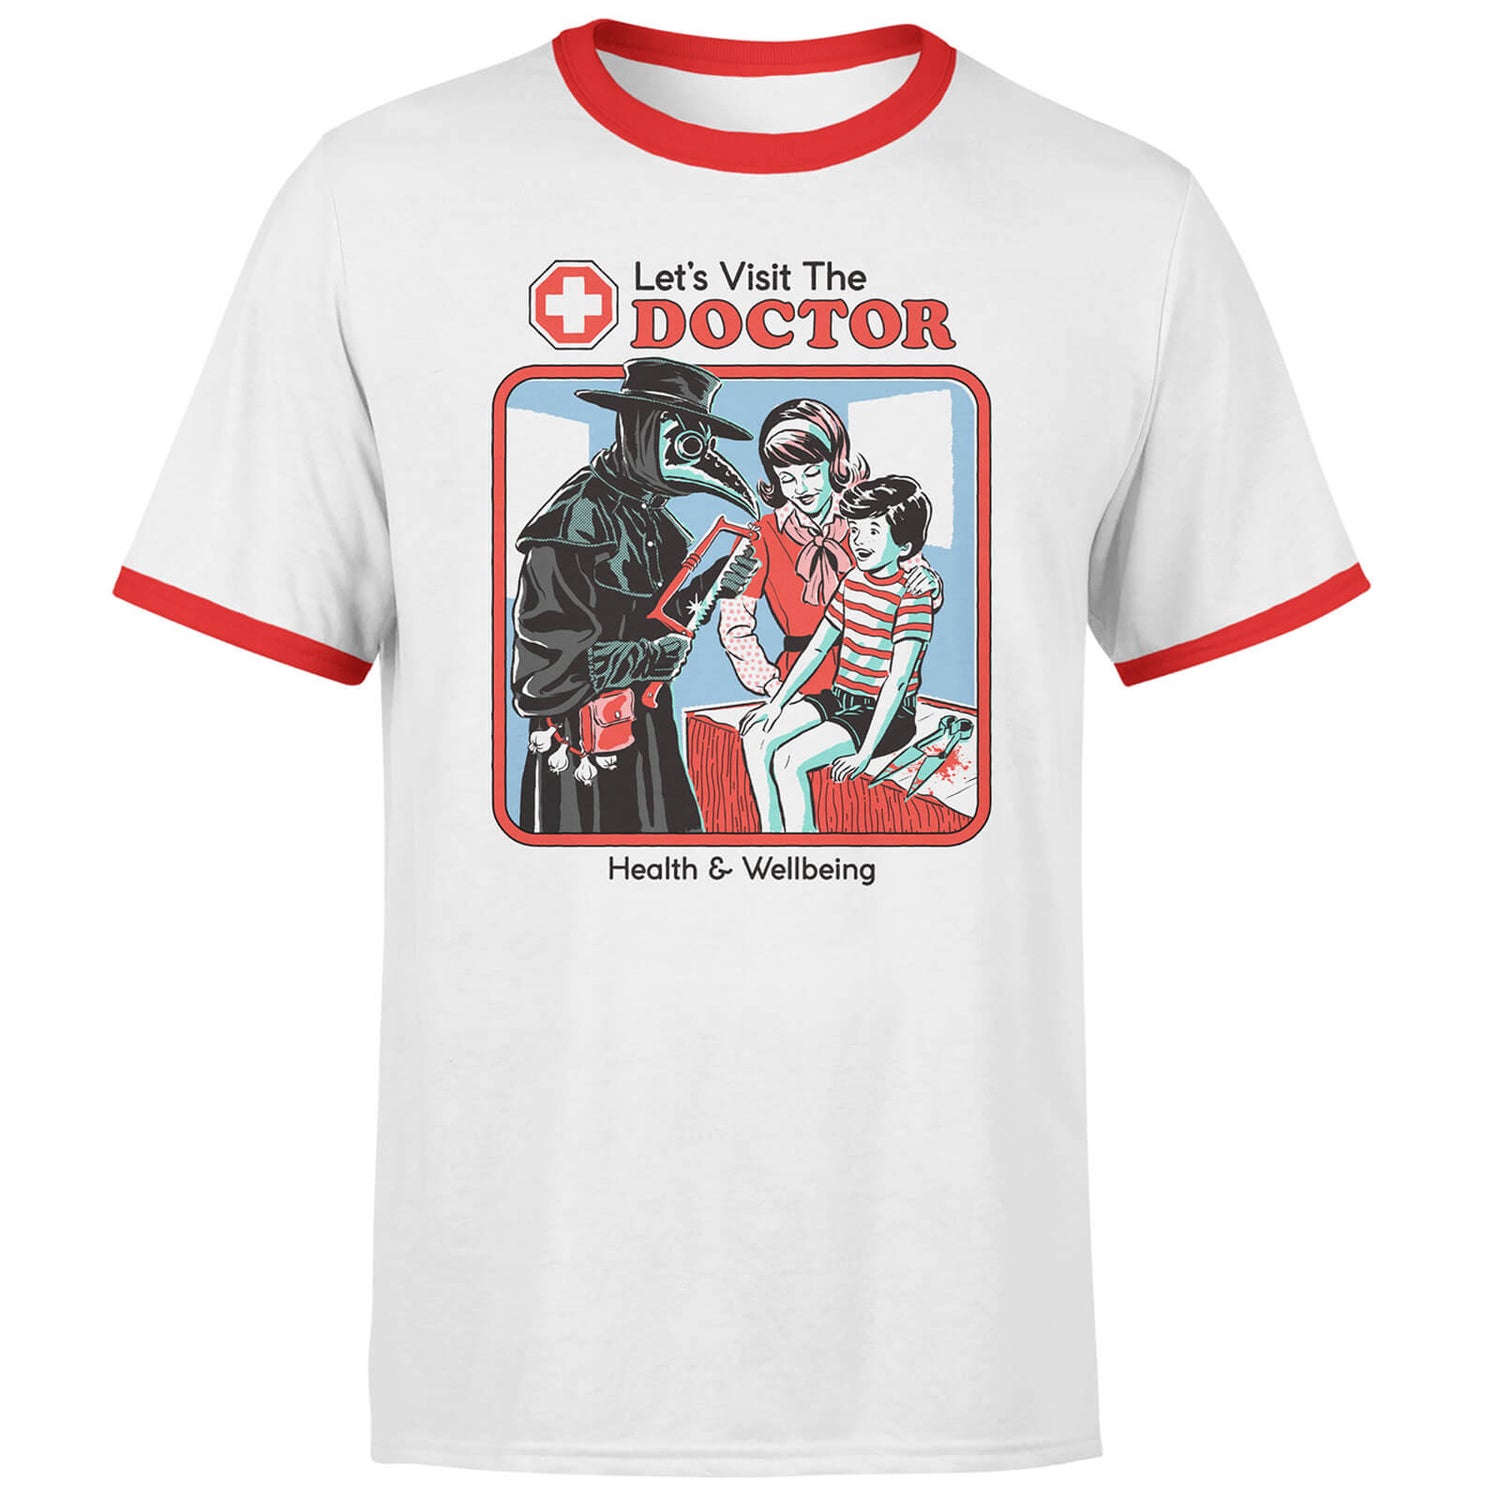 Let's Visit The Doctor Men's Ringer T-Shirt - White/Red